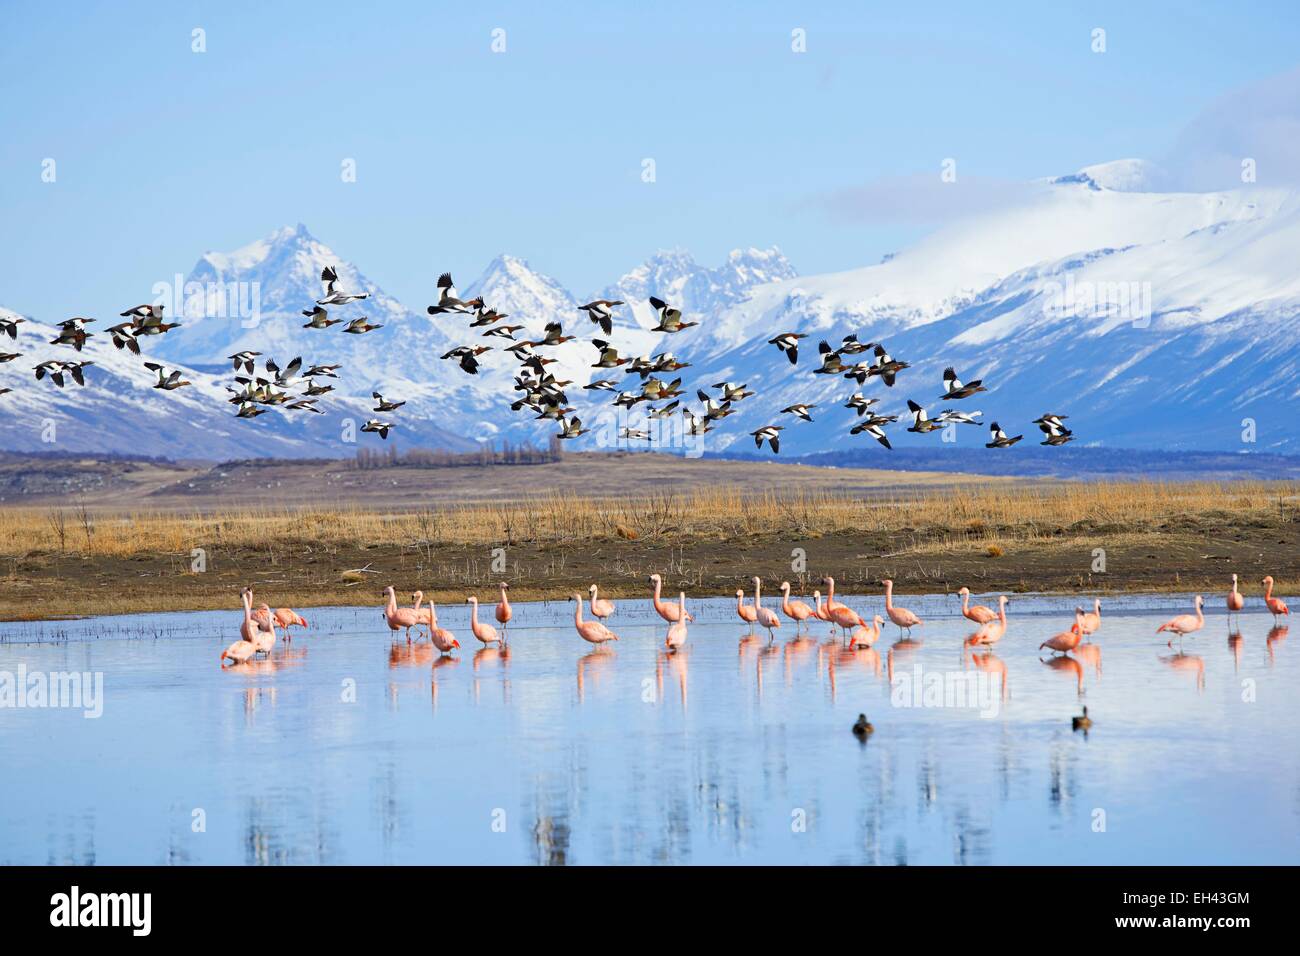 argentina-patagonia-santa-cruz-el-calafate-pink-flamingo-and-gooses-EH43GM.jpg